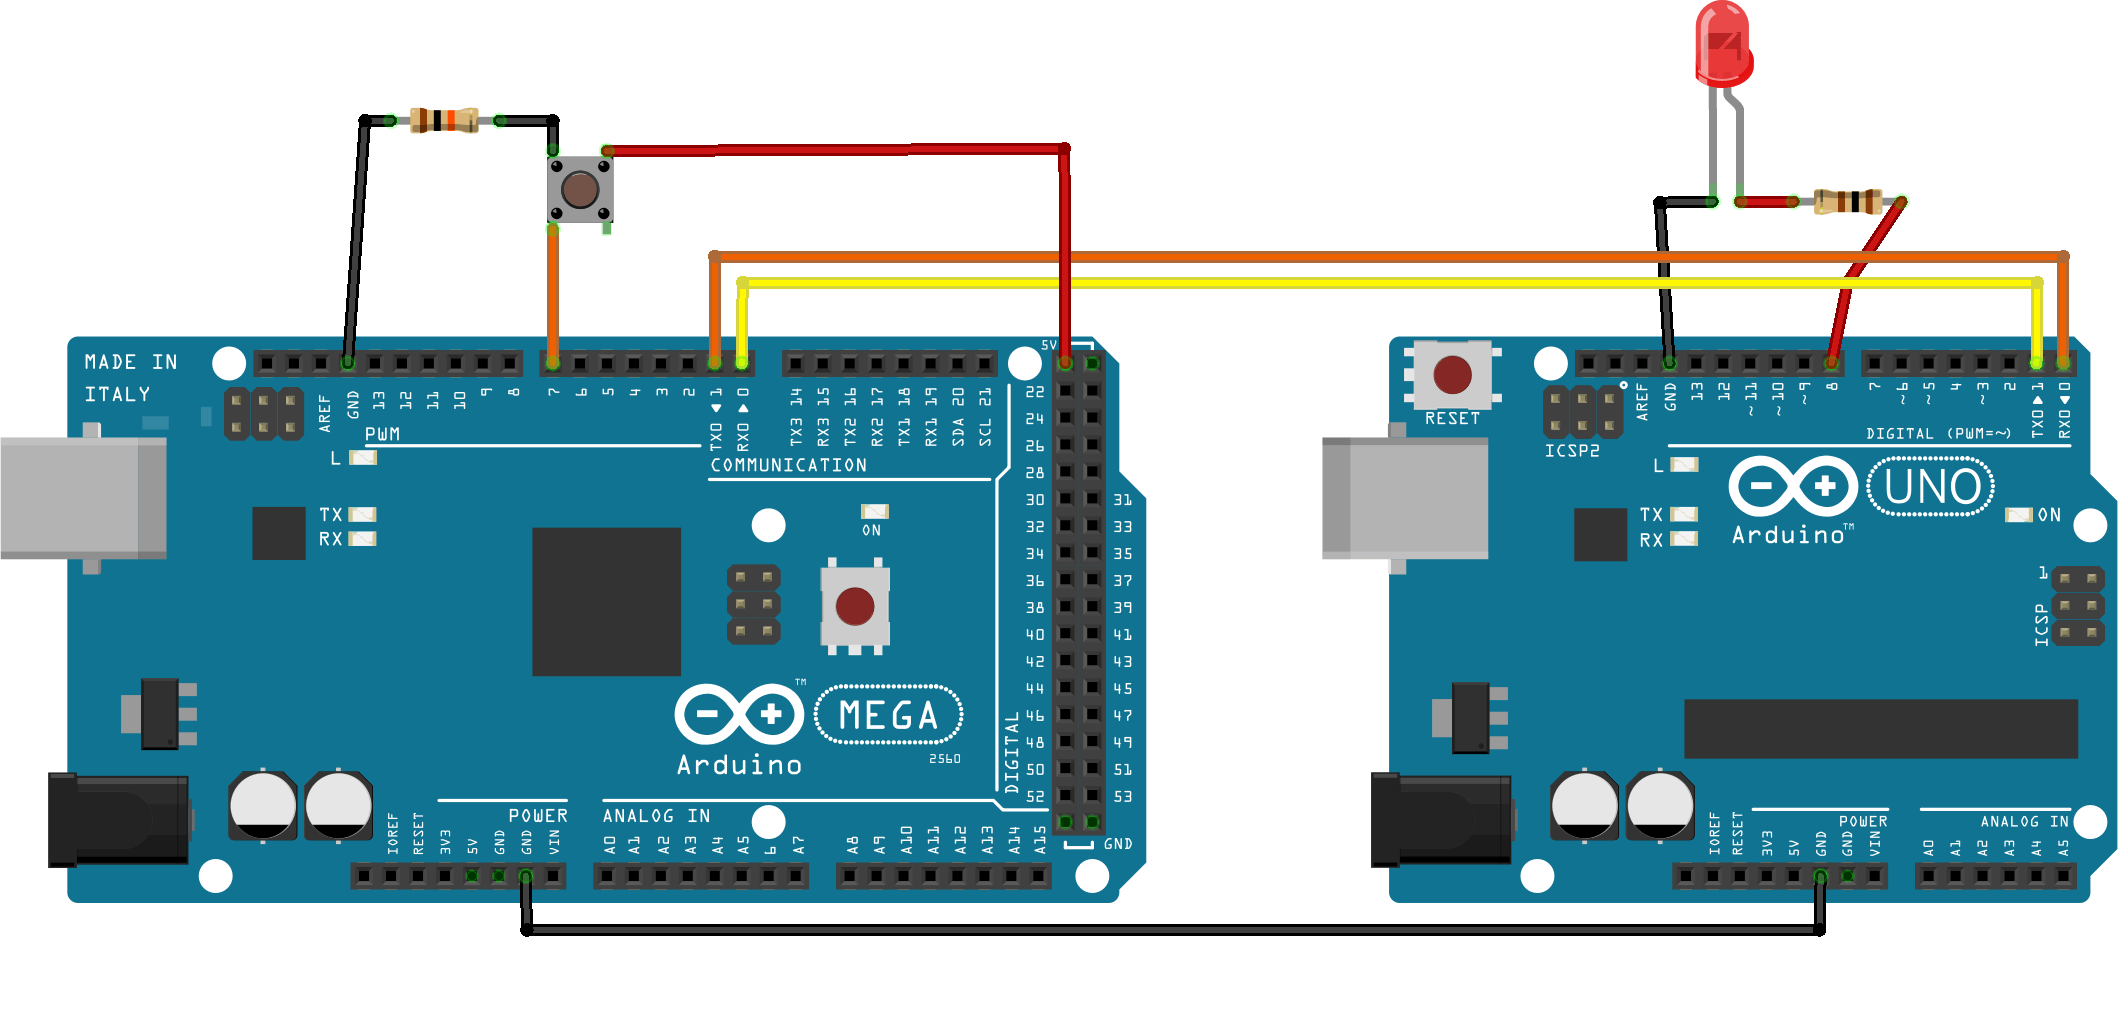 arduino to arduino serial communication